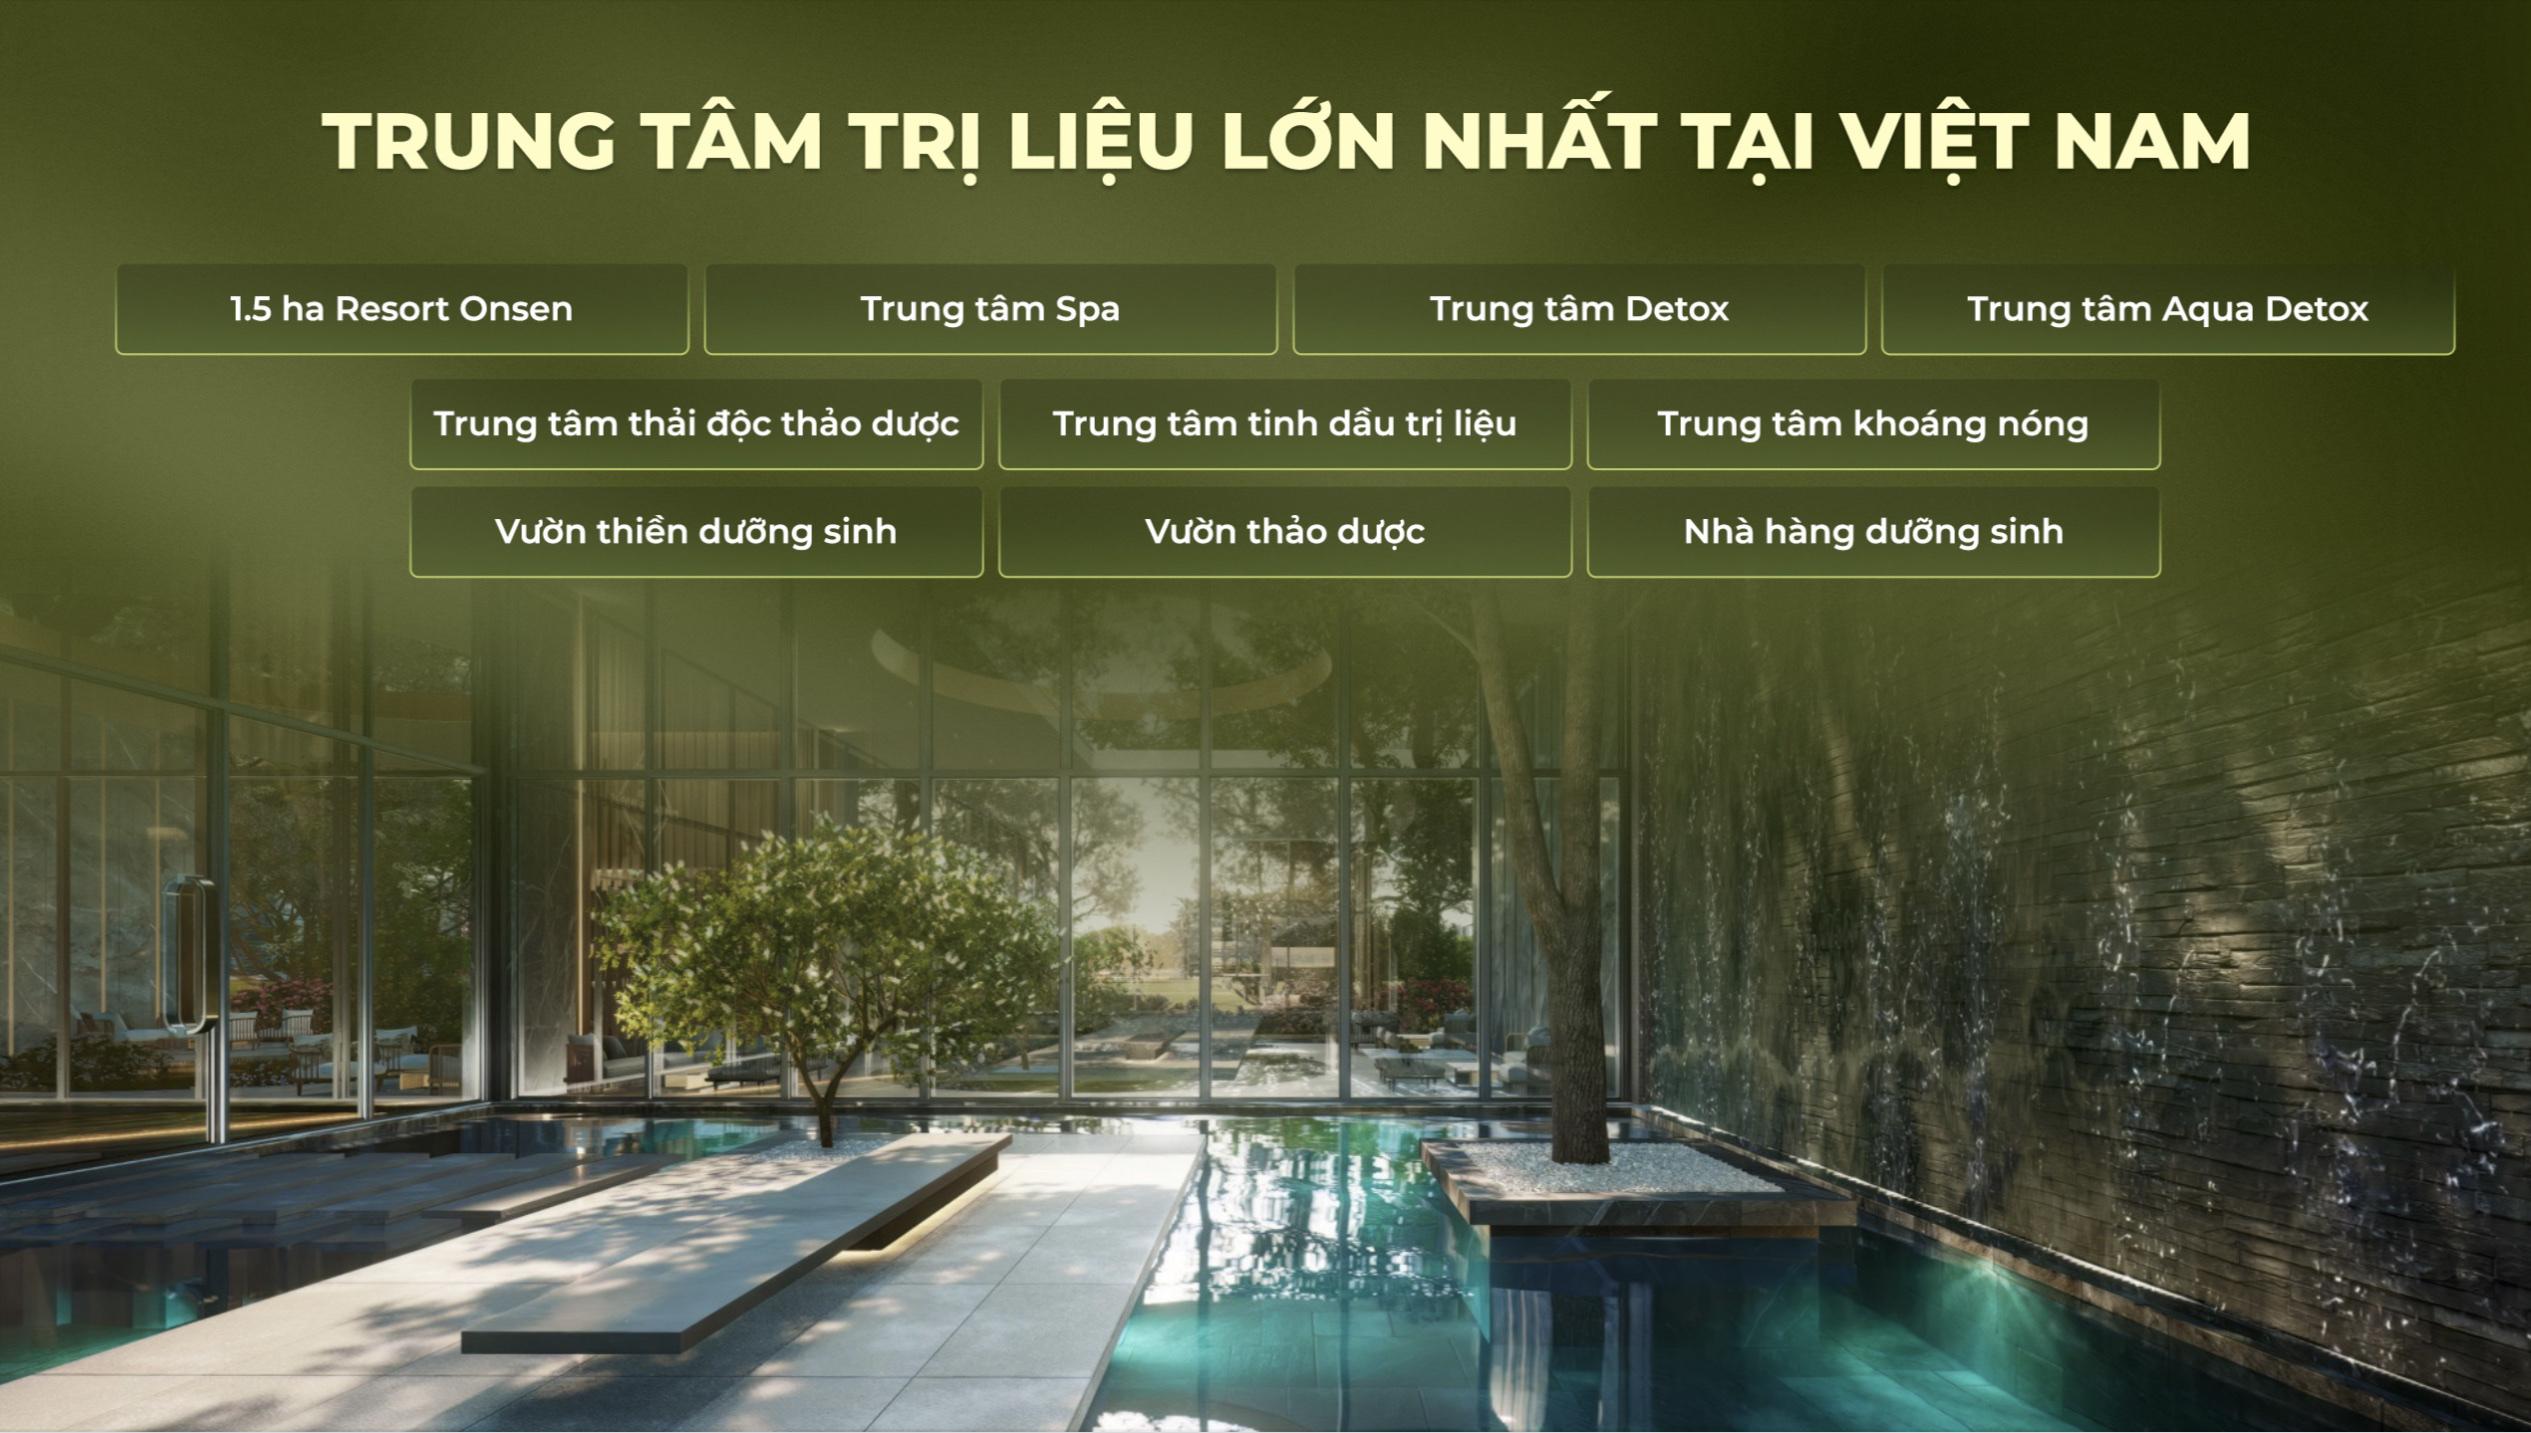 Ecopark Nhơn Trạch sẽ là trung tâm trị liệu lớn nhất Việt Nam